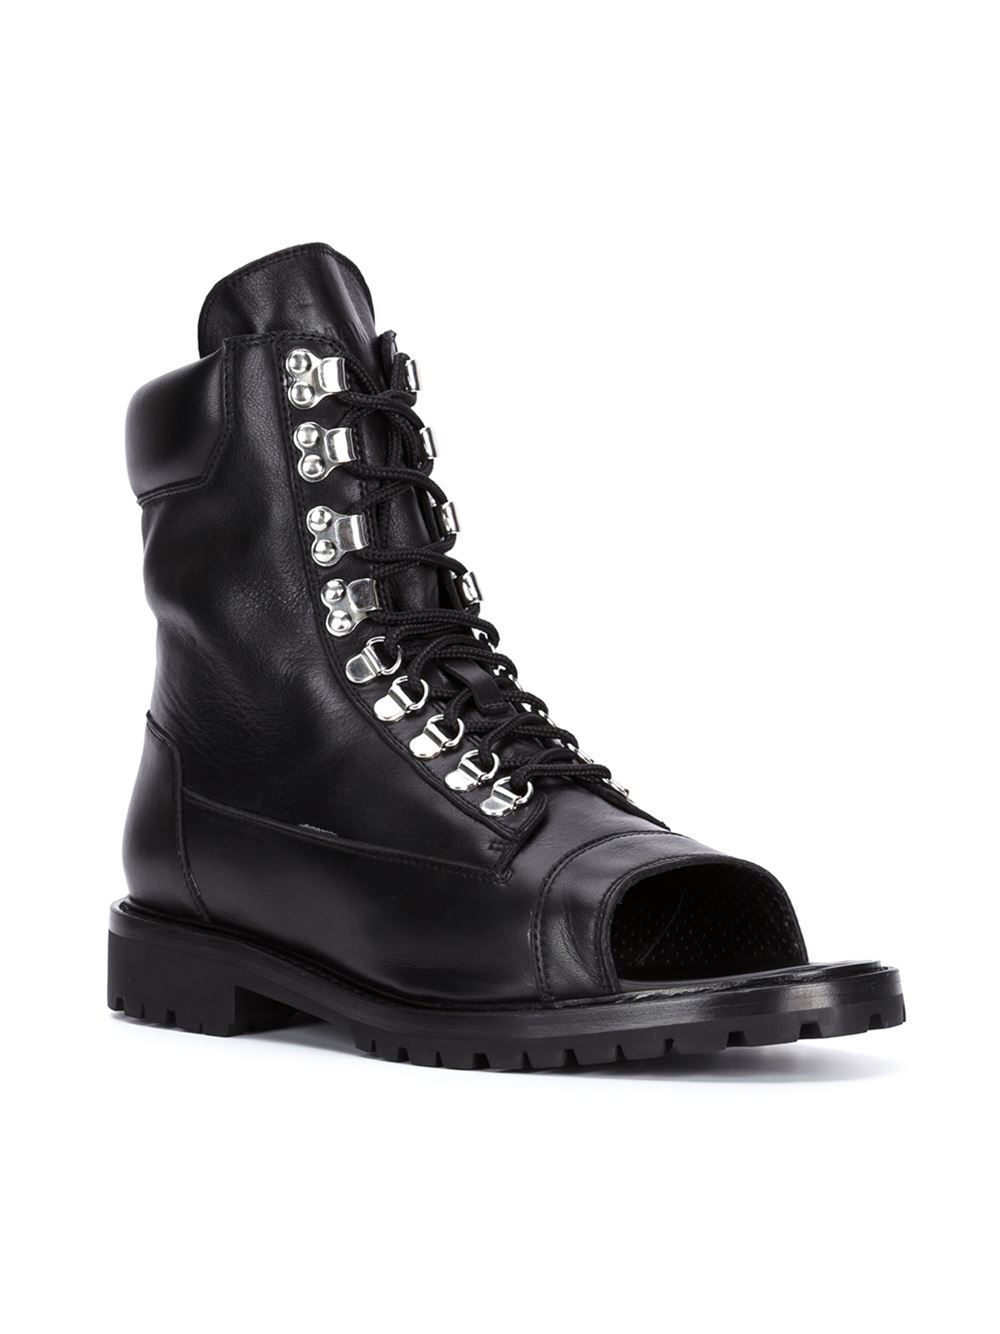 Balmain Open Toe Boots in Black for Men - Lyst